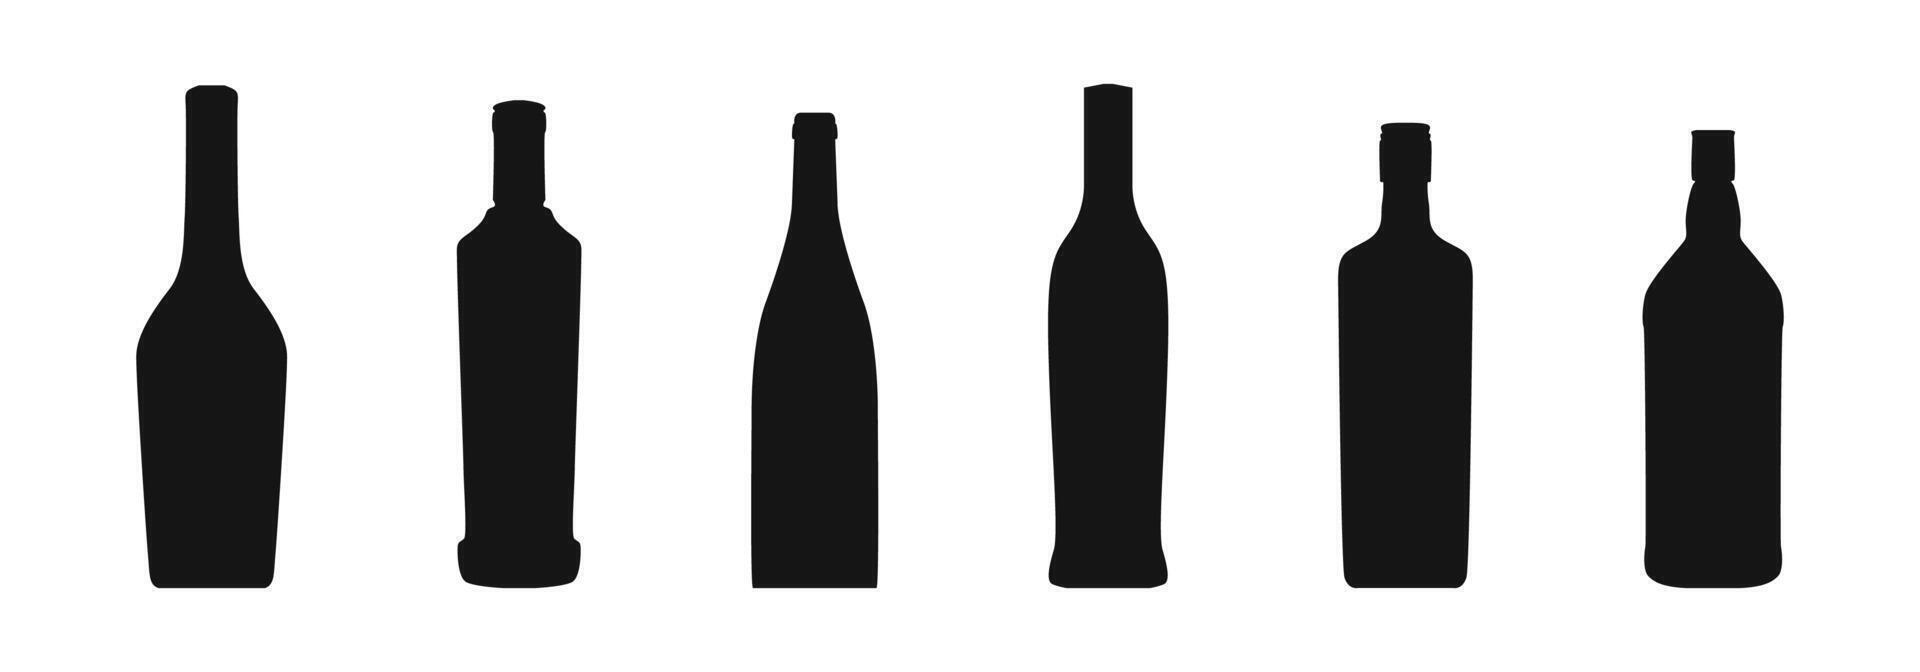 botella negro silueta colocar. alcohol bebida botellas cerveza, vino o whisky botella icono. vector